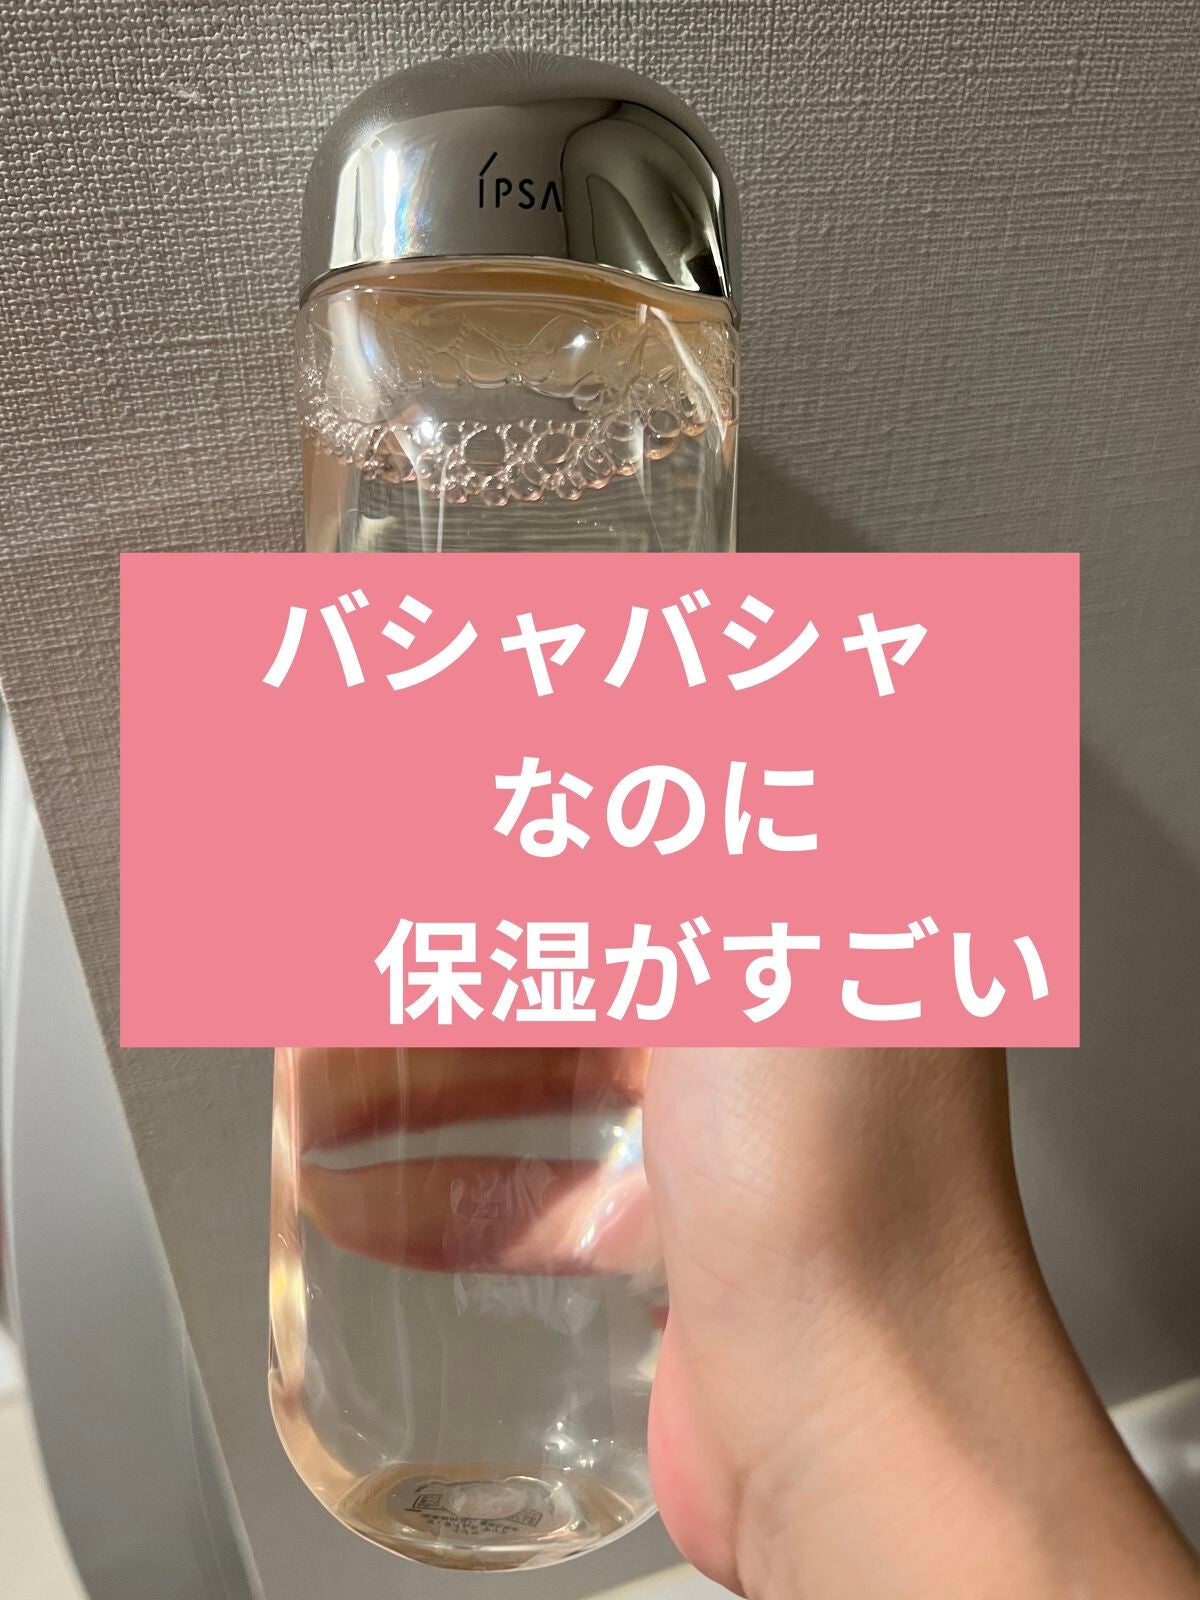 IPSA/ザ・タイムＲ アクアジャンボサイズ 300ml化粧水